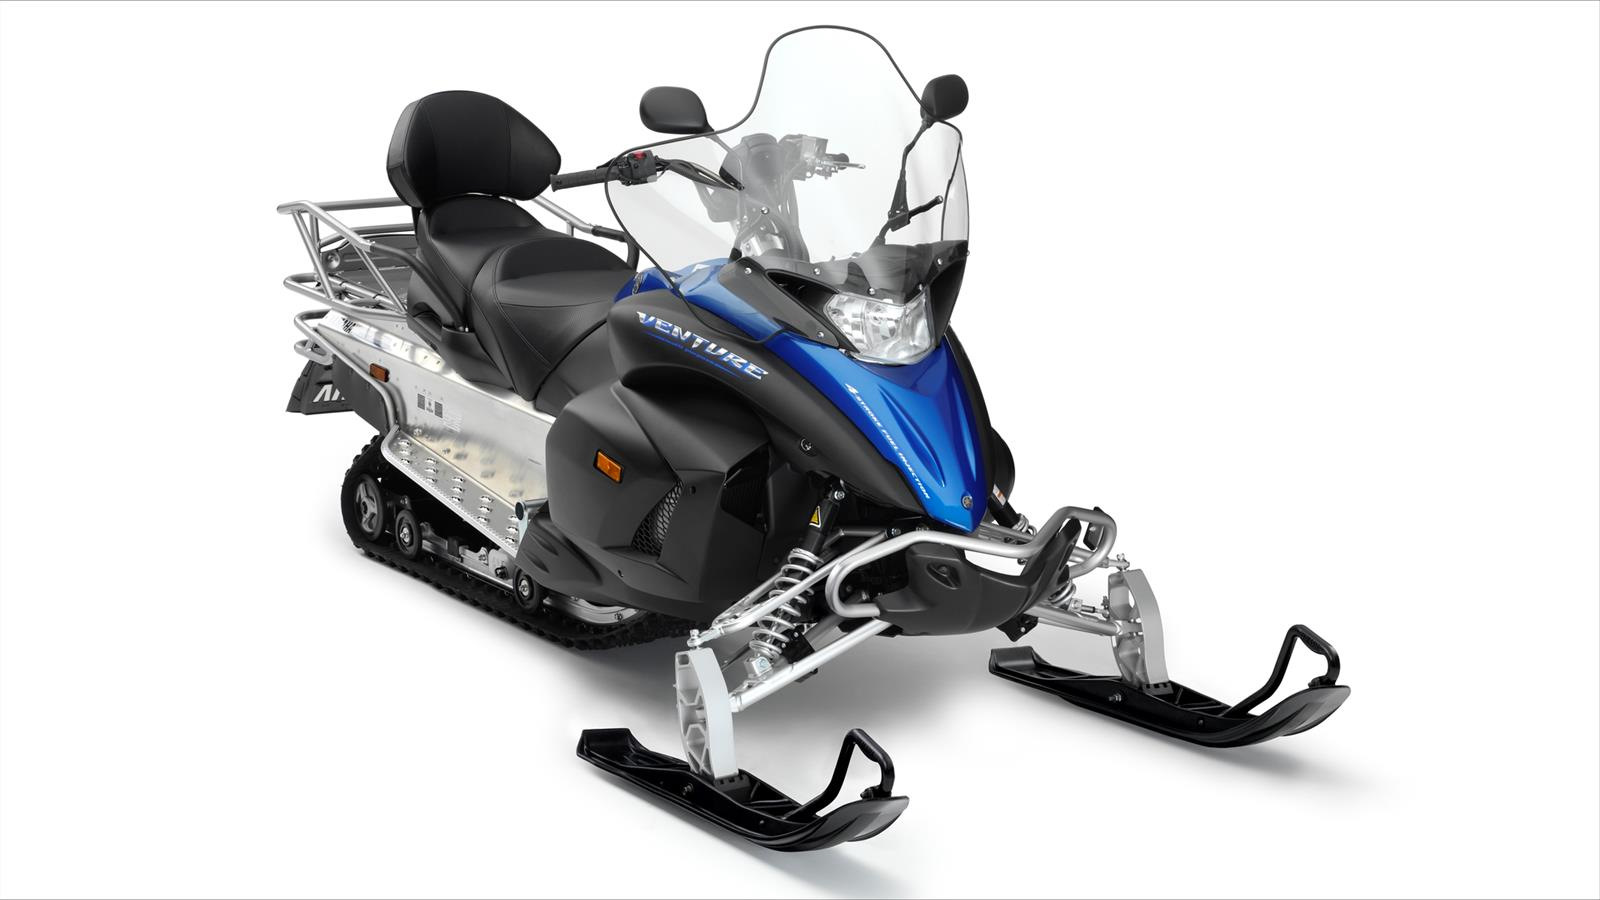 Проверяем Yamaha Venture на укатанной трассе и мягком снегу